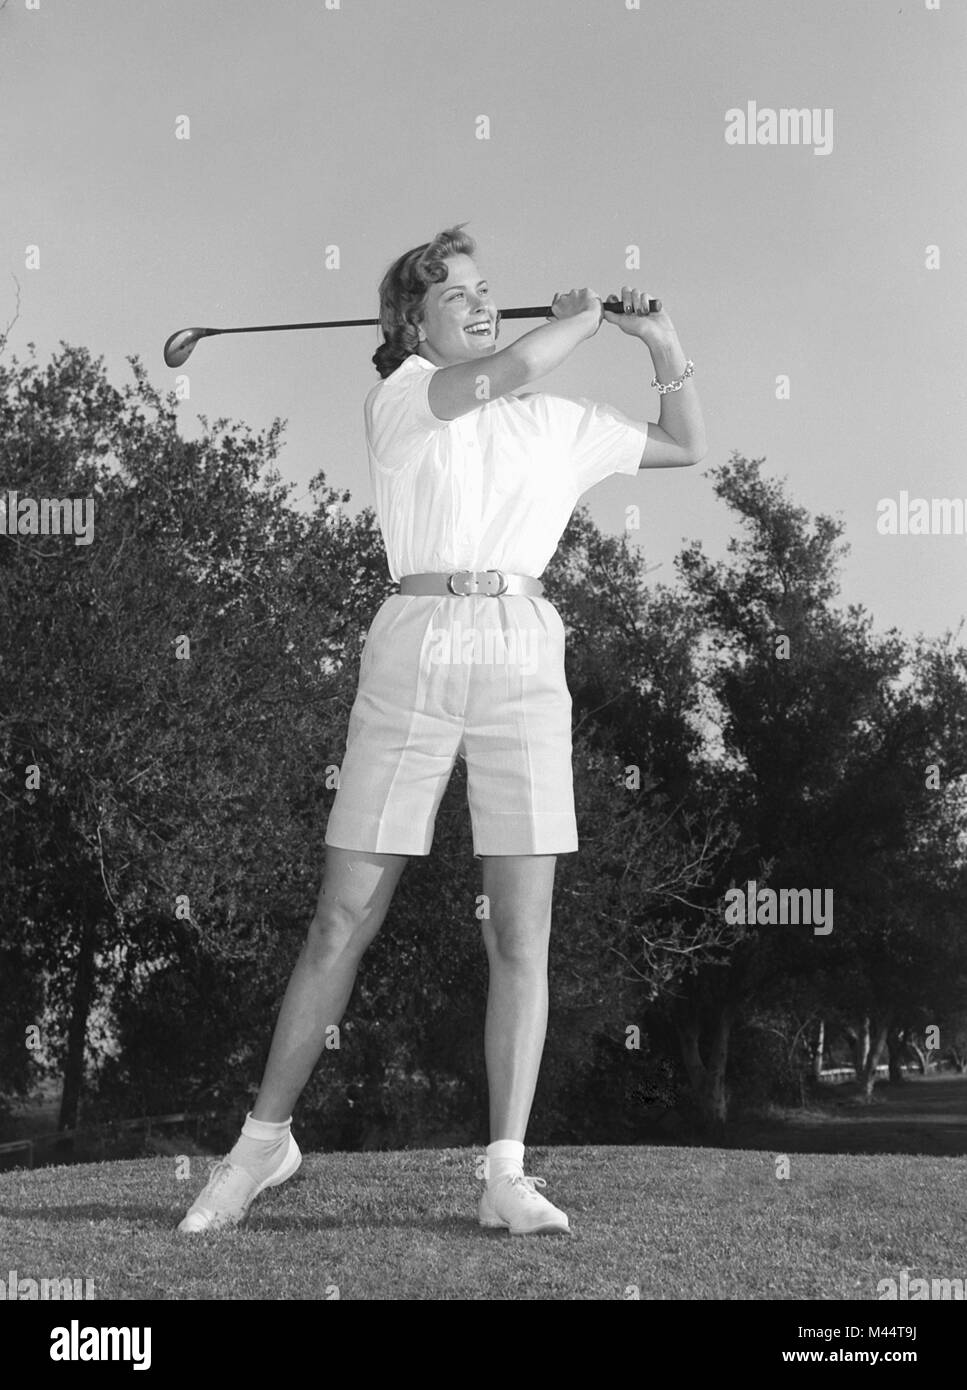 Un golfeur féminin entraîne une balle et sourit en même temps, ca. 1962. Nom de fichier : Banque D'Images